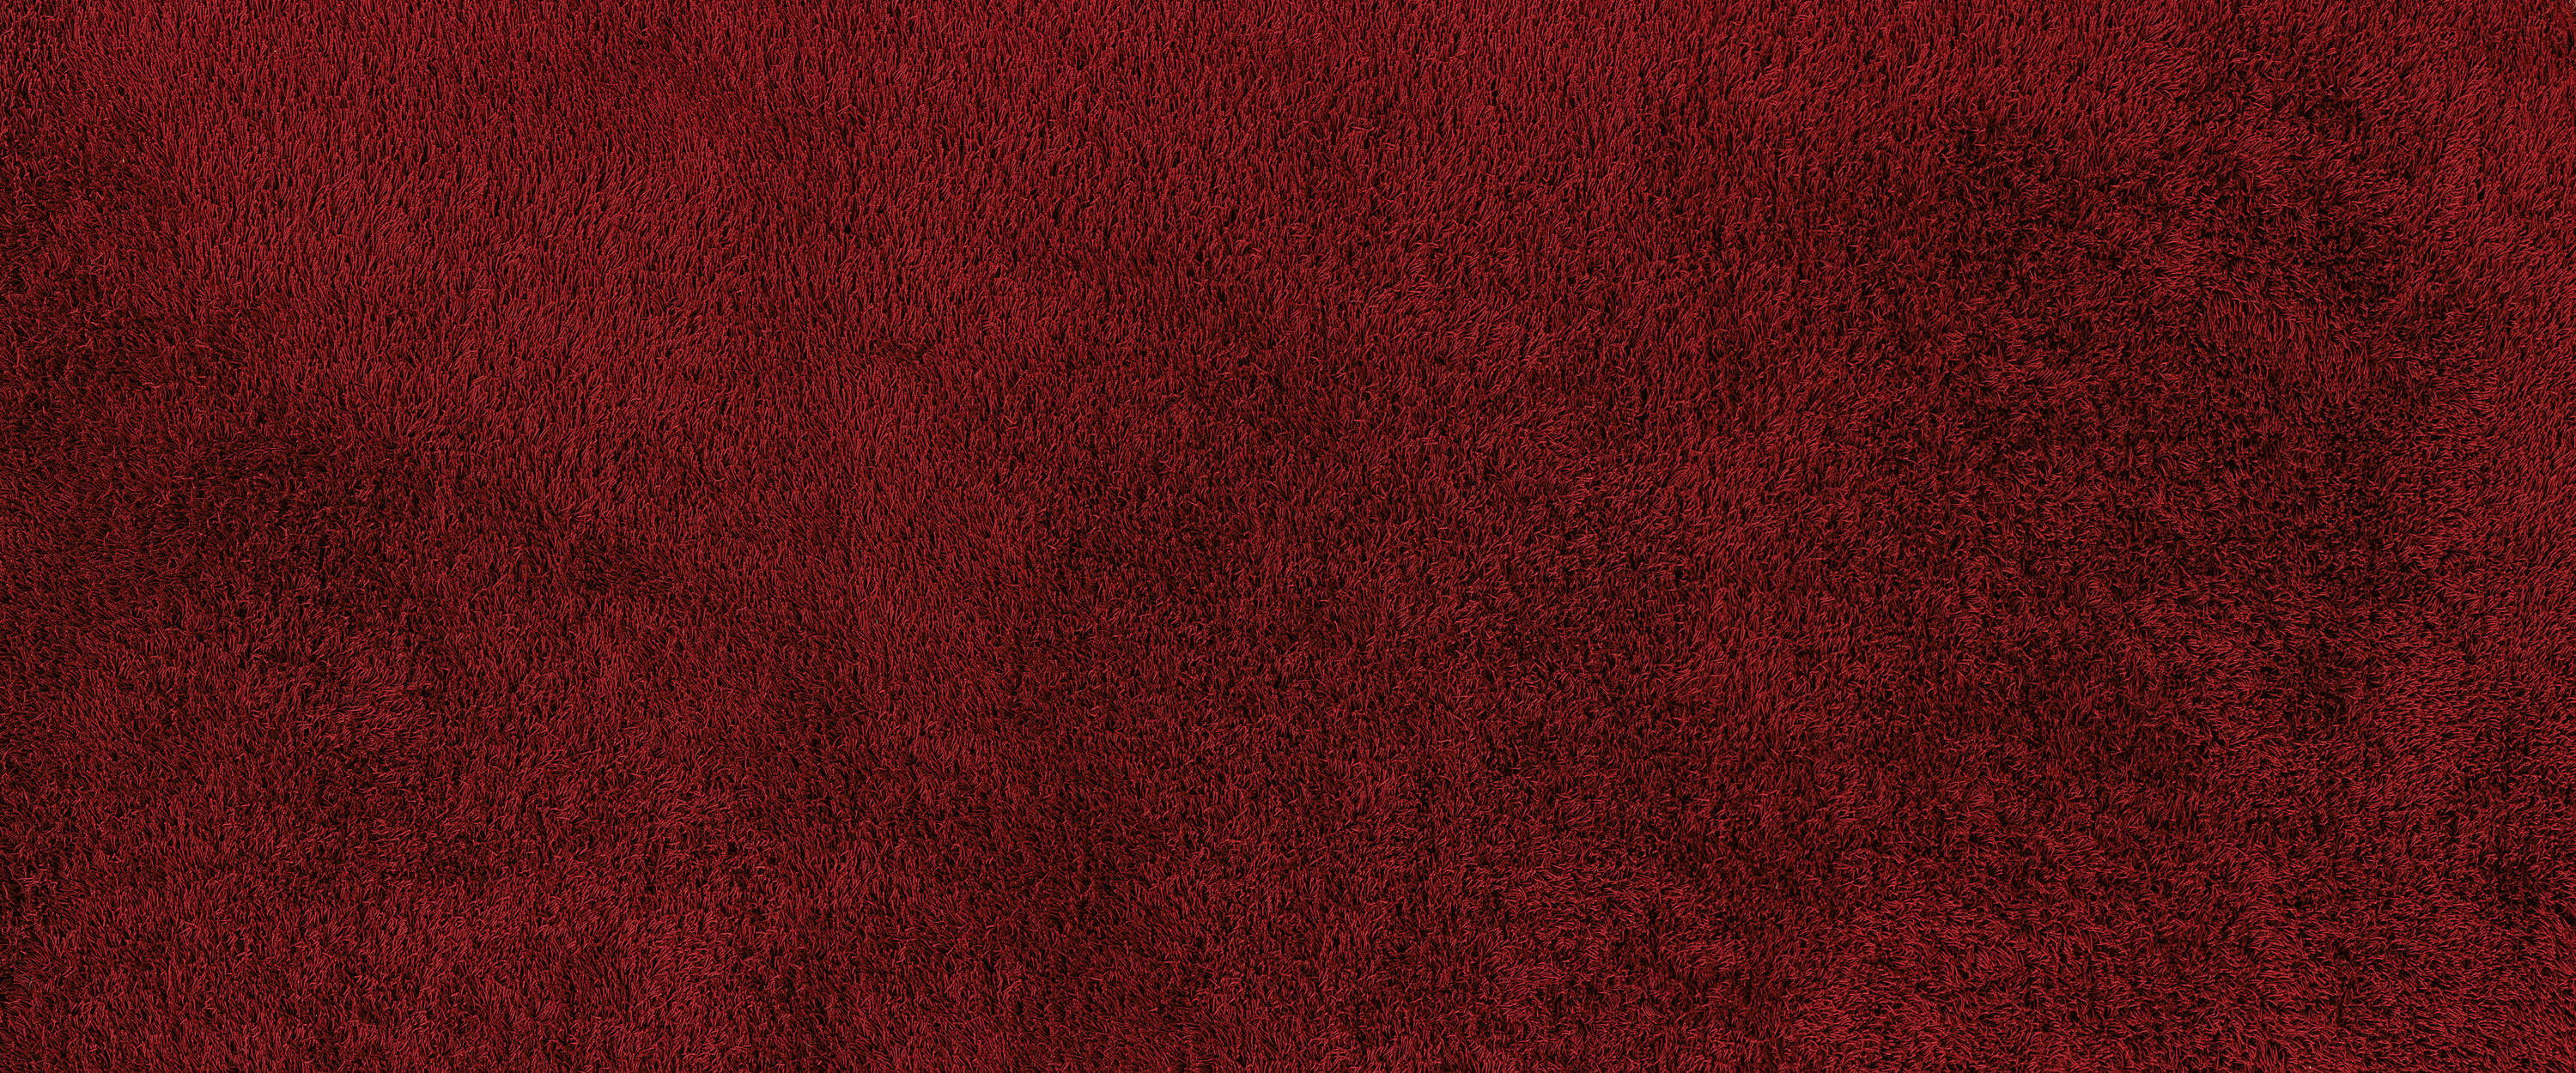             Detalle del mural de una alfombra roja
        